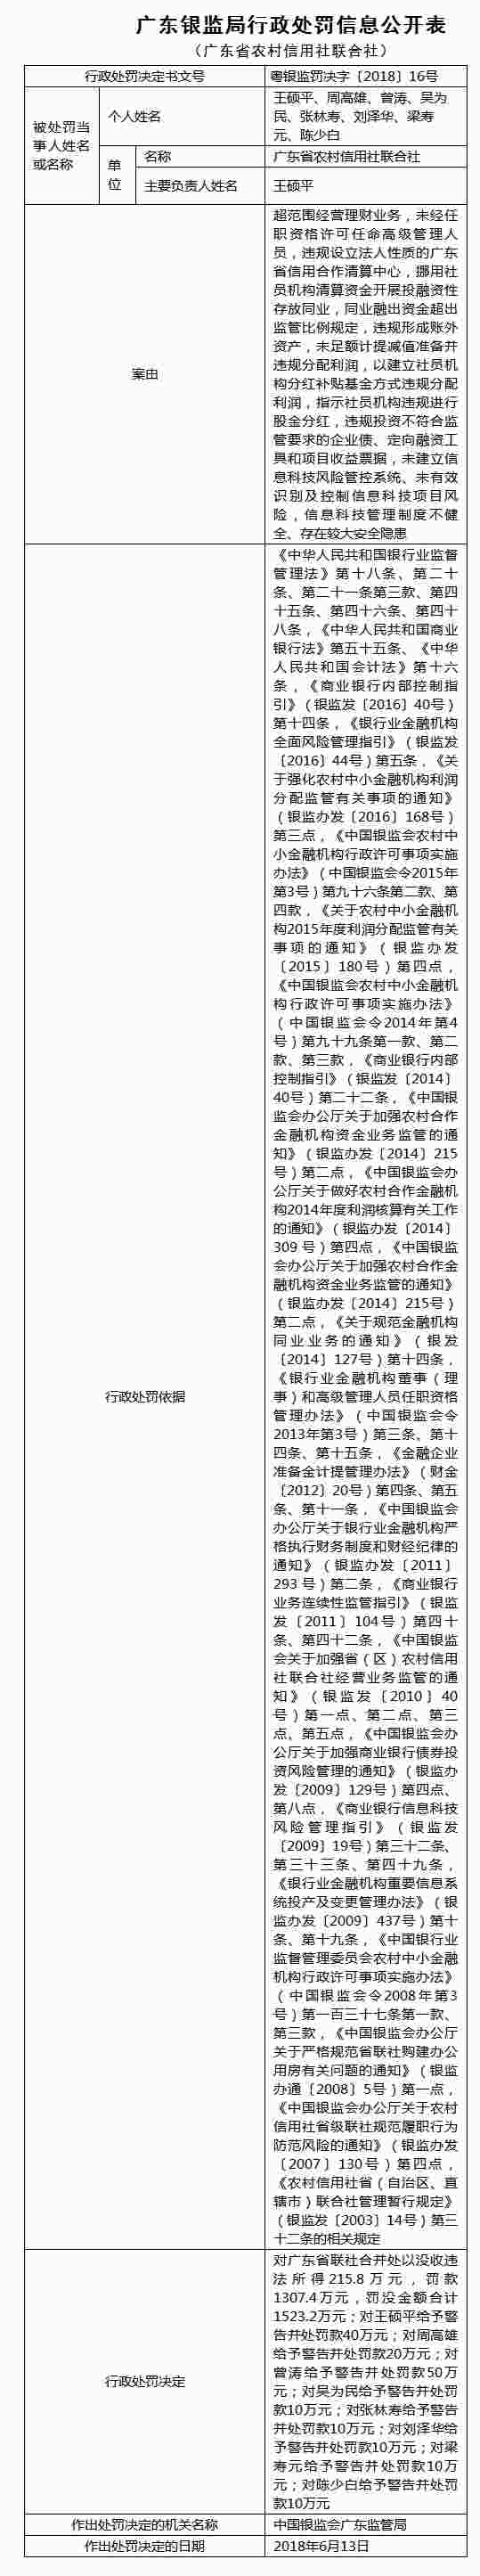 广东省农信社超范围理财等12宗违法违规 罚没1523万